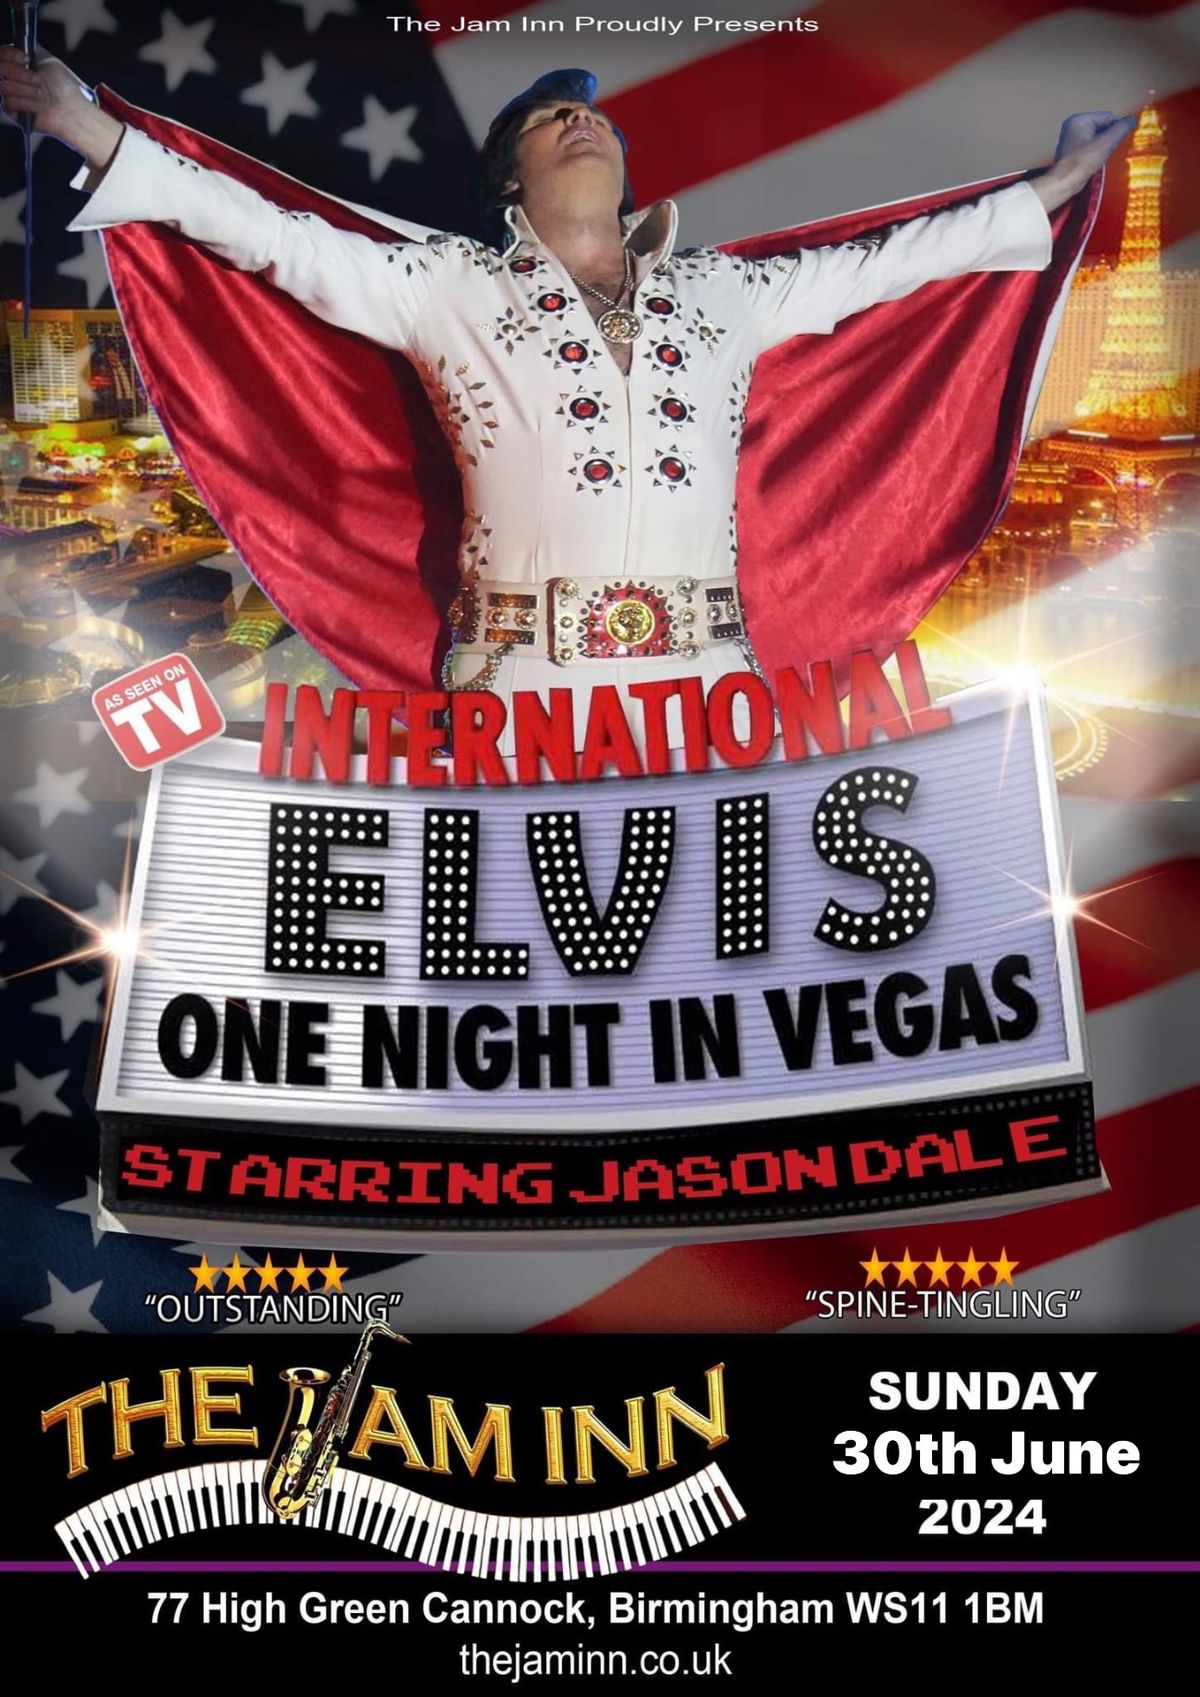 The Sunday Sessions: Elvis, Viva Las Cannock!